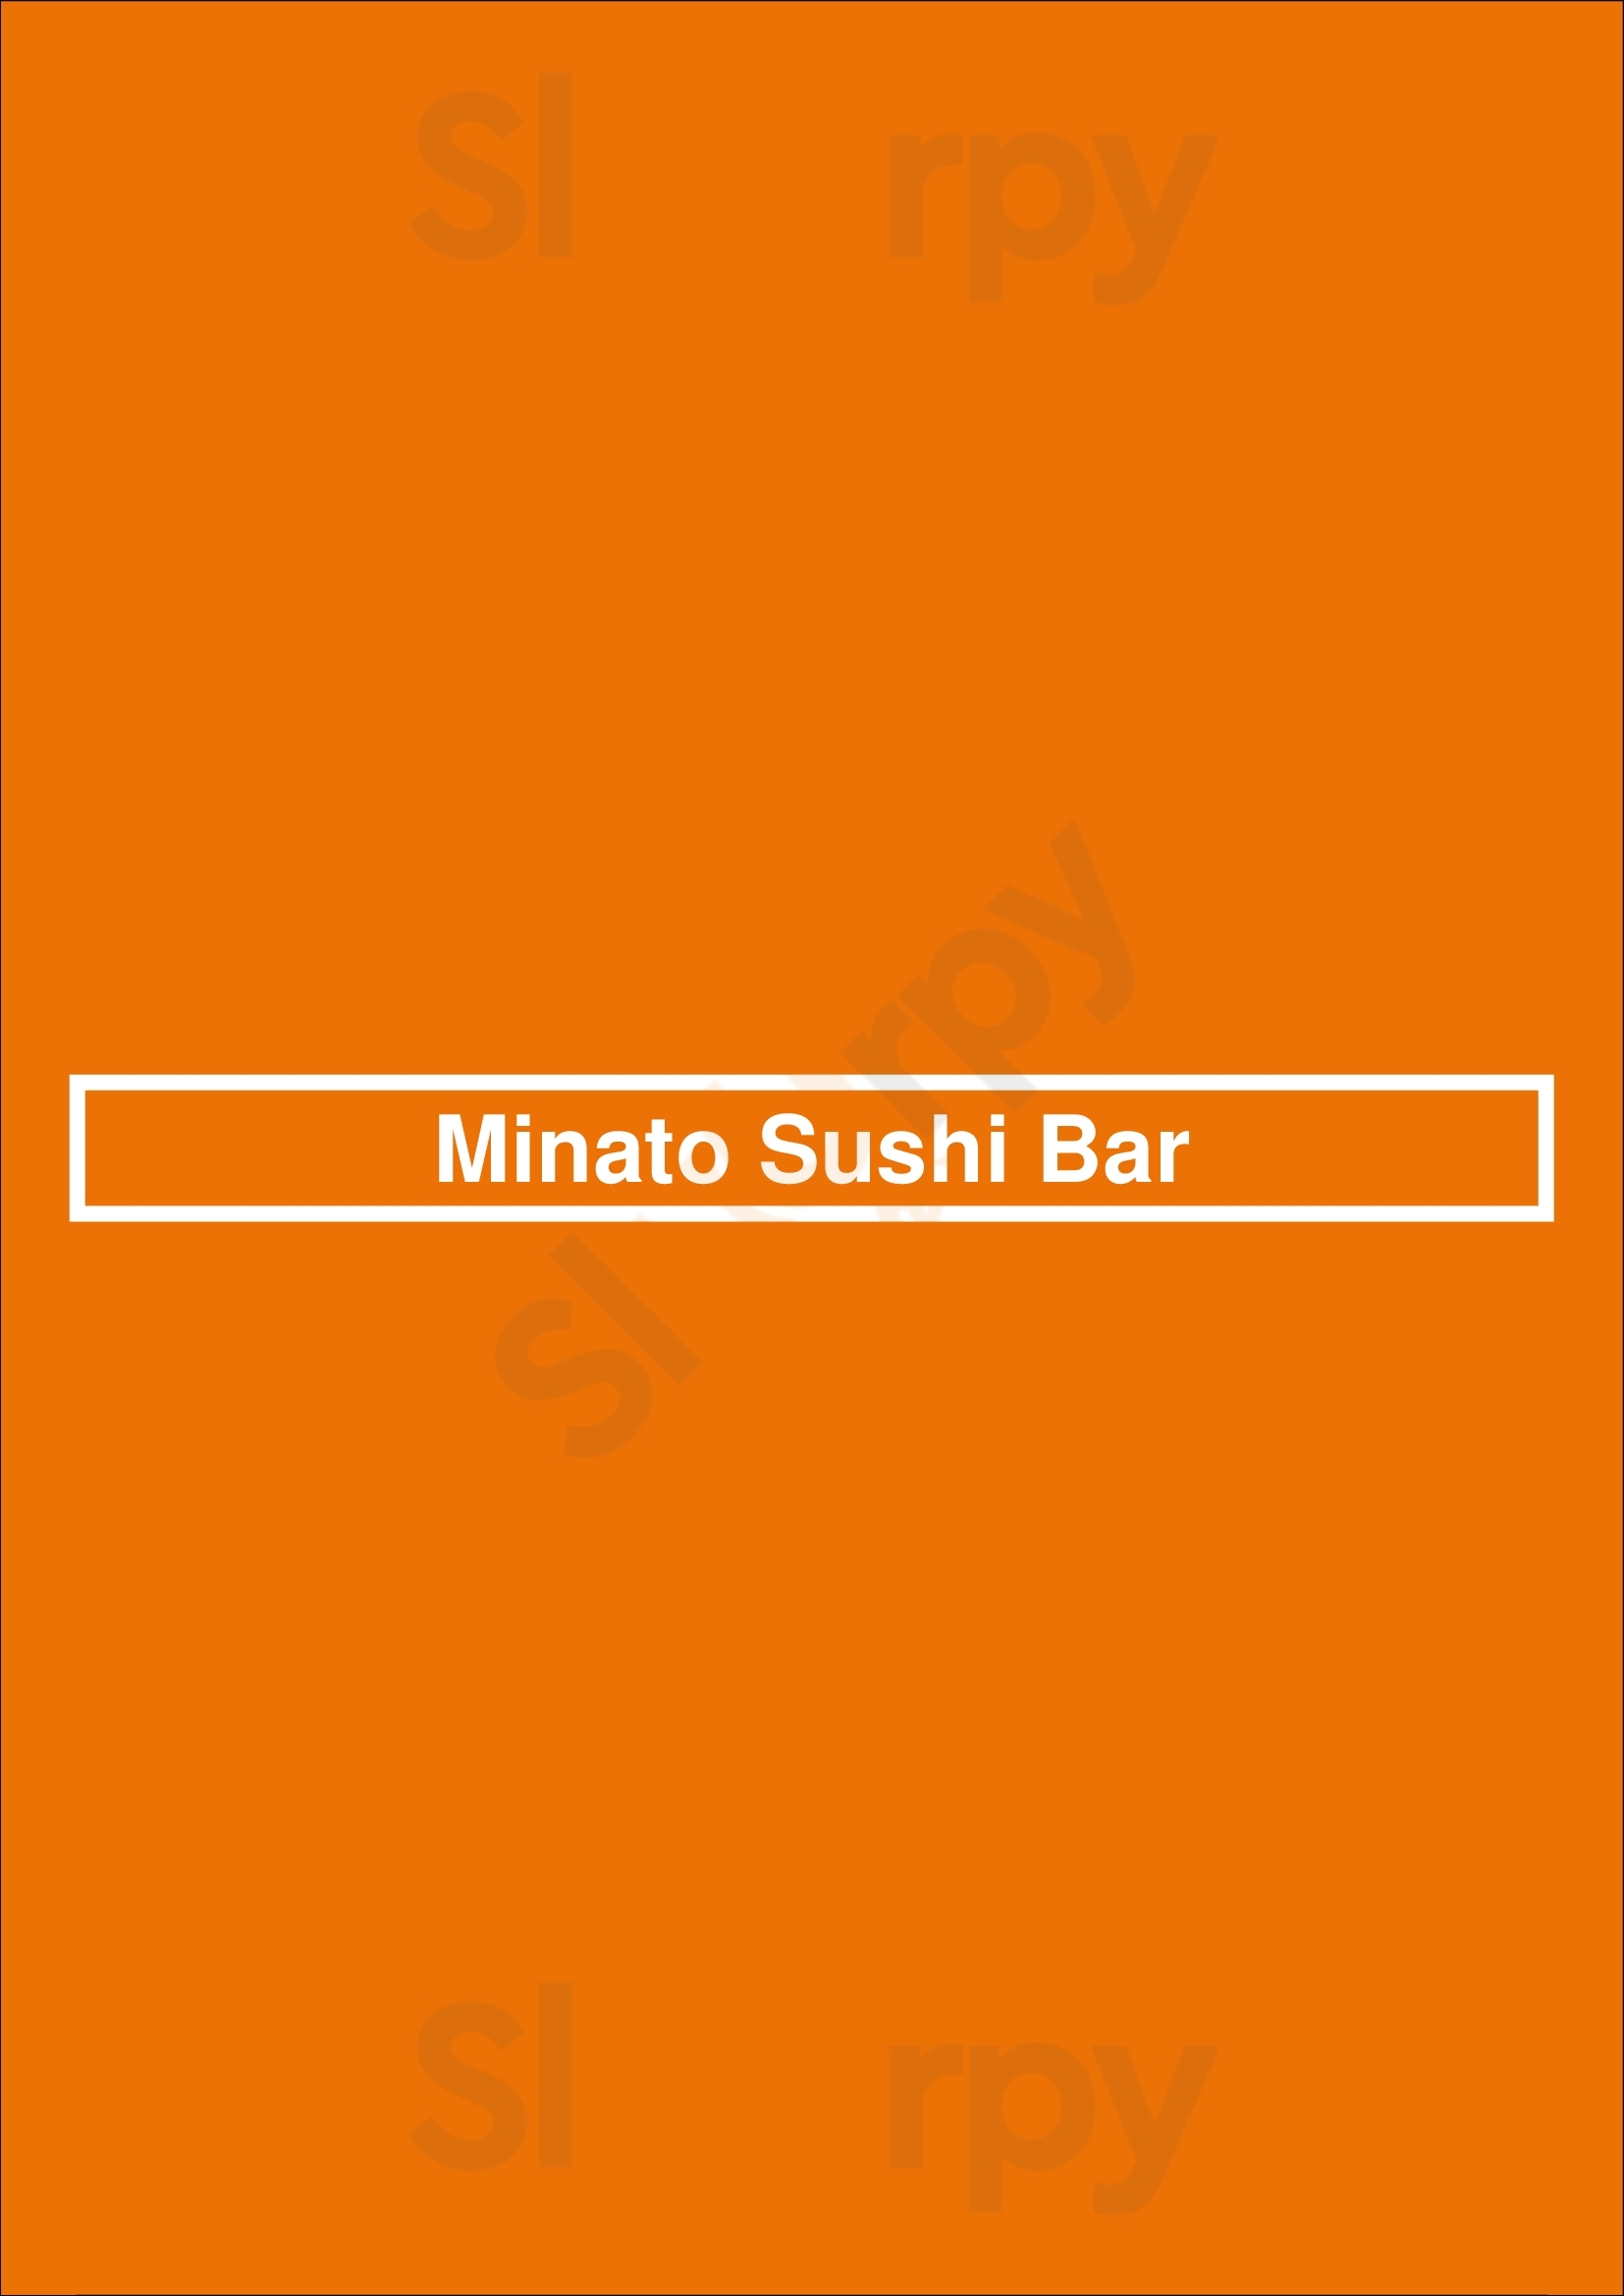 Minato Sushi Bar Baltimore Menu - 1